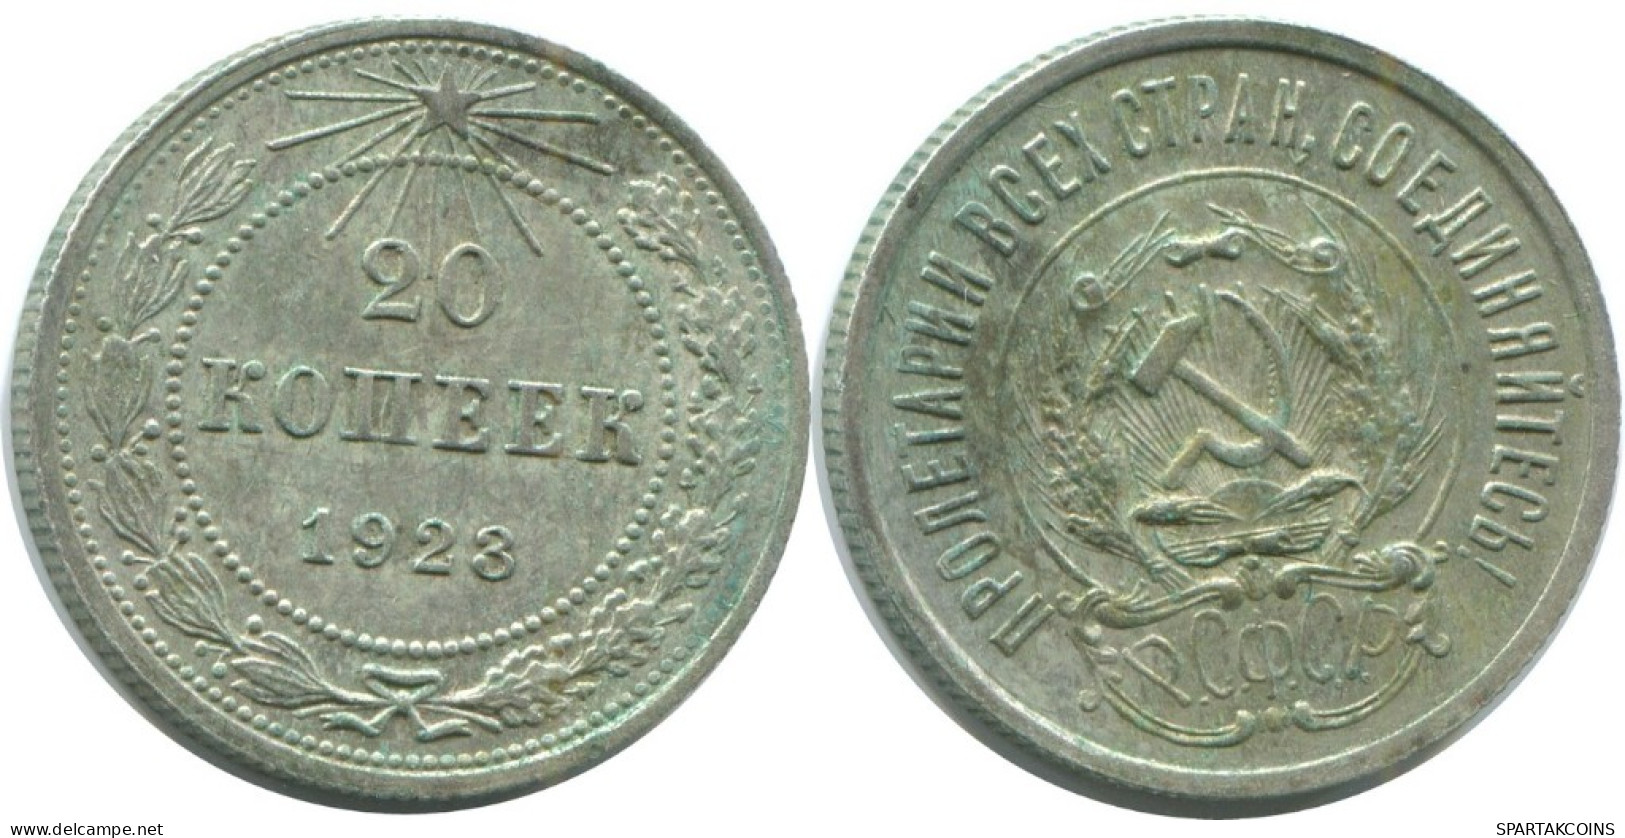 20 KOPEKS 1923 RUSSLAND RUSSIA RSFSR SILBER Münze HIGH GRADE #AF587.4.D.A - Rusia